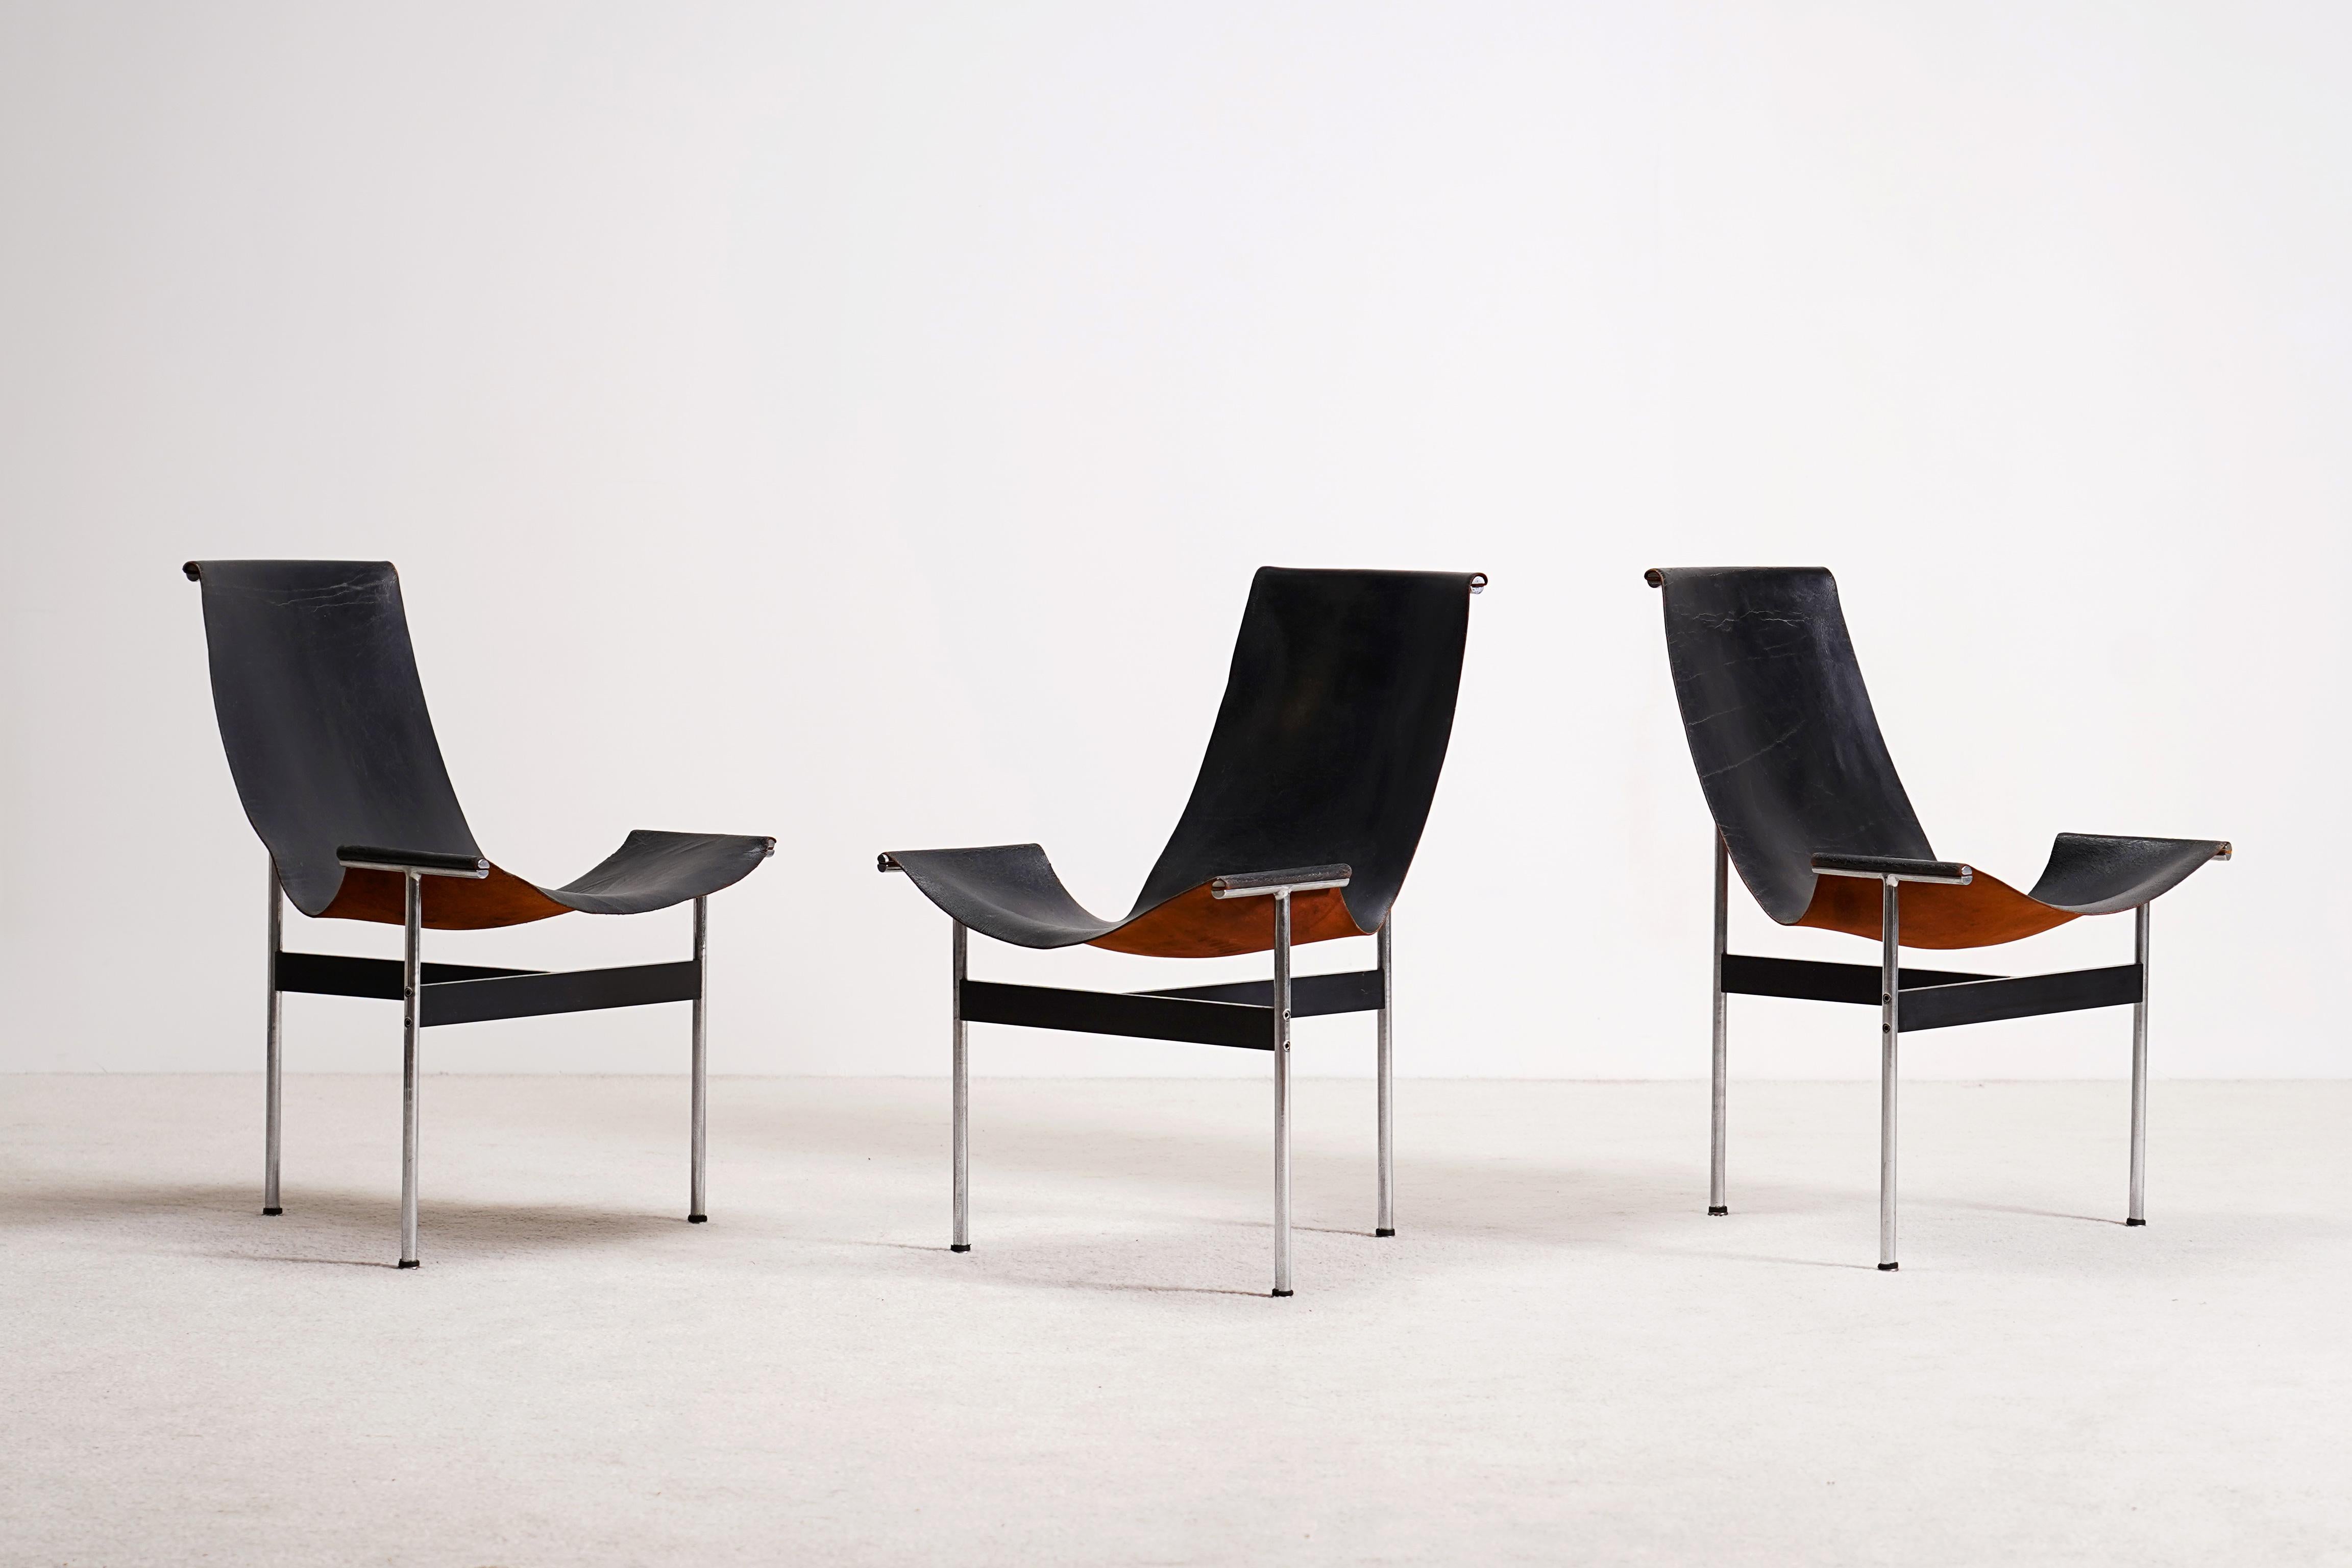 Ensemble de 3(three) chaises à trois pieds, modèle AT&T, conçu par Katavolos, Kelley et Littell en 1952 / 1953. Trois pieds en acier en forme de T maintiennent le cuir noir en place. Le cuir est relié au cadre en trois points seulement, ce qui donne